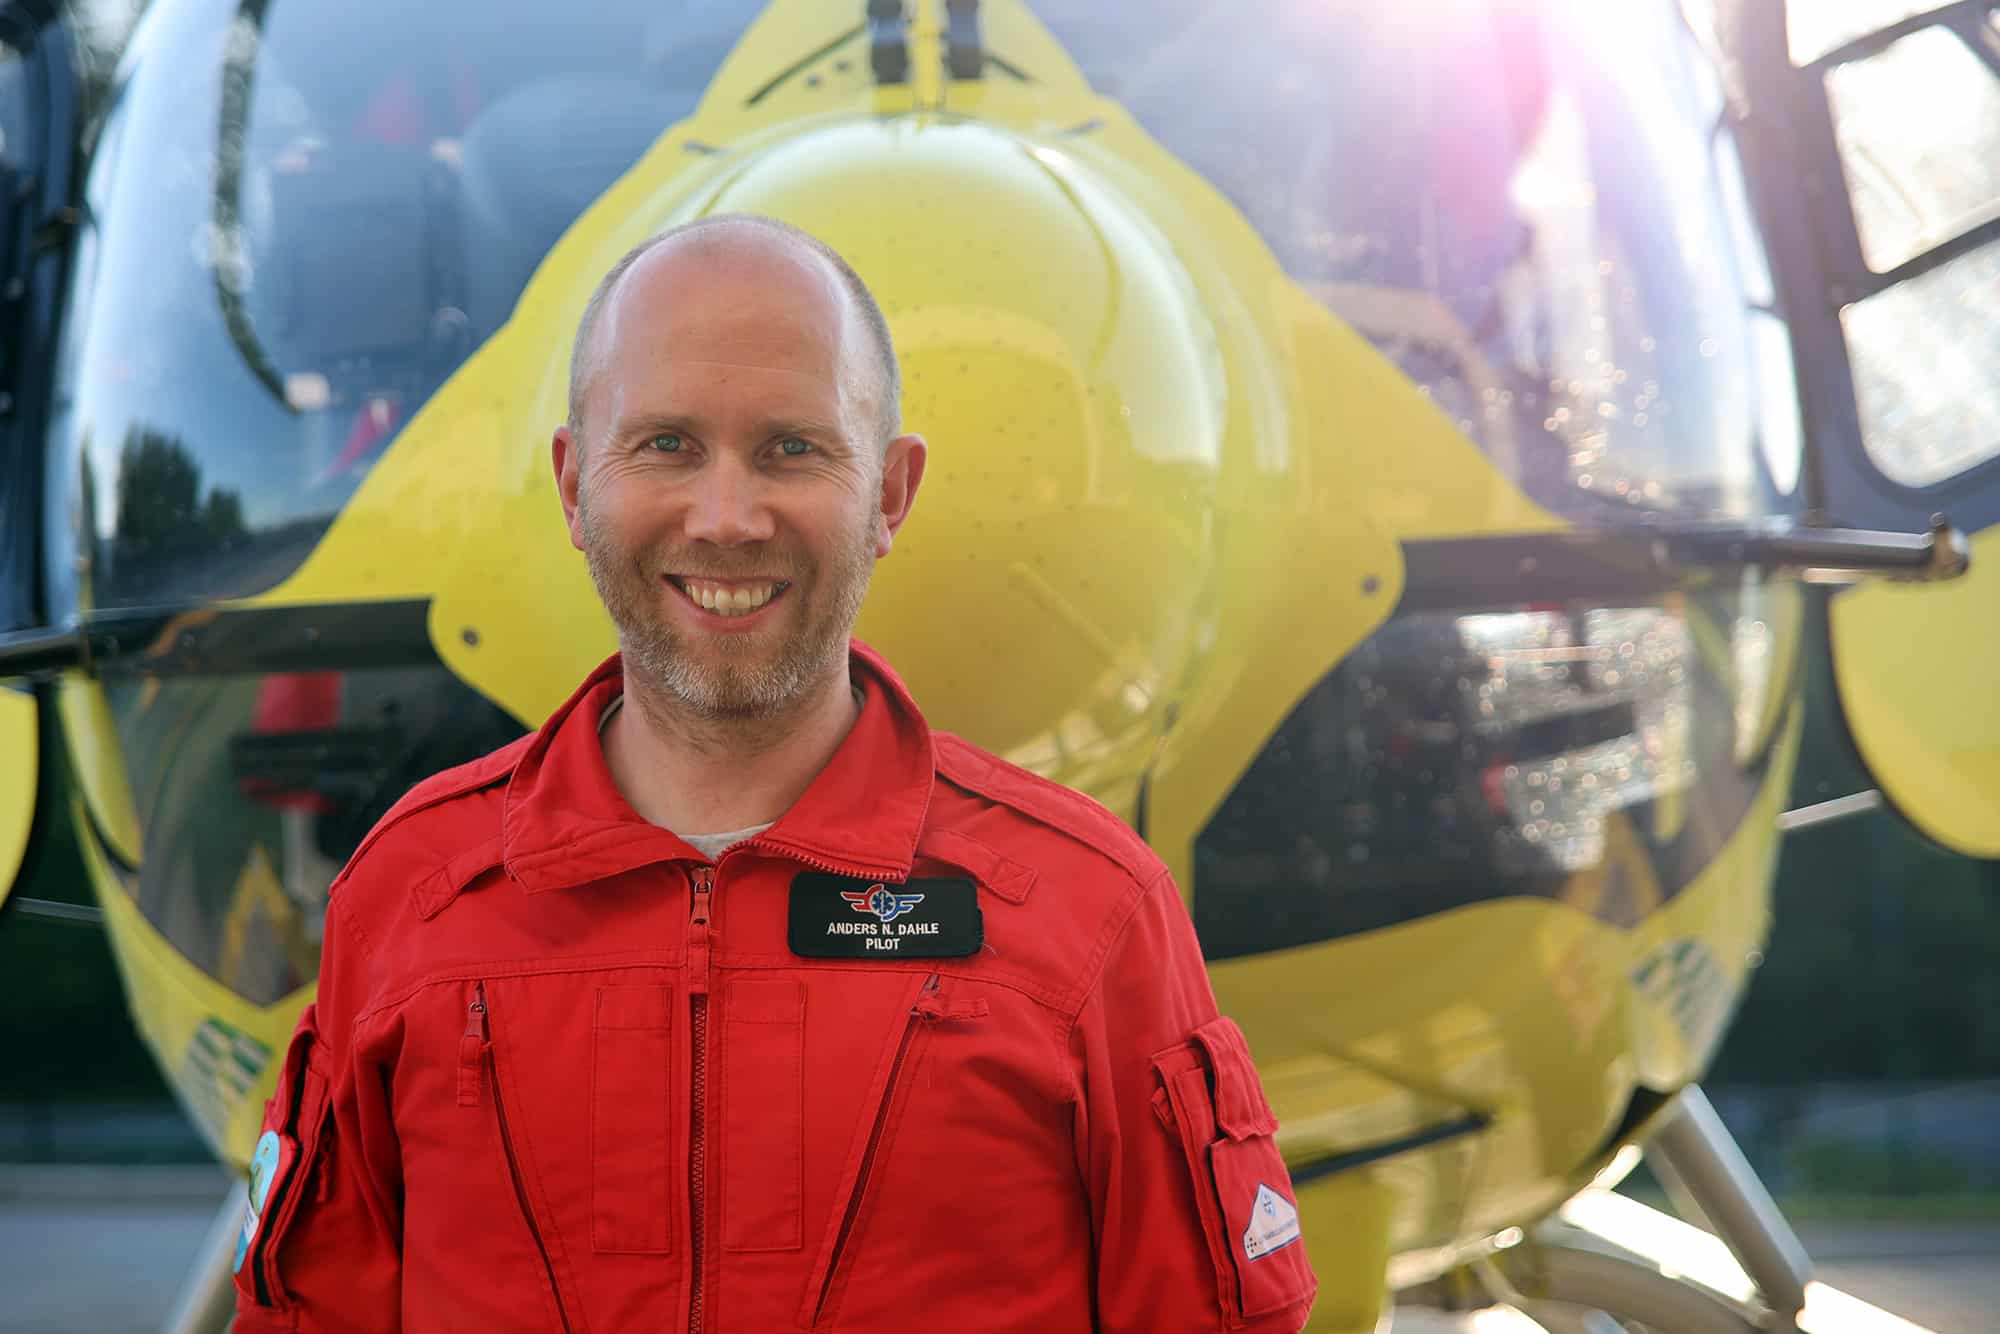 Bilde av Anders Nordgaard Dahle foran gult legehelikopter. Han hadde pilotvakt da Marit fikk hjerteinfarkt. 